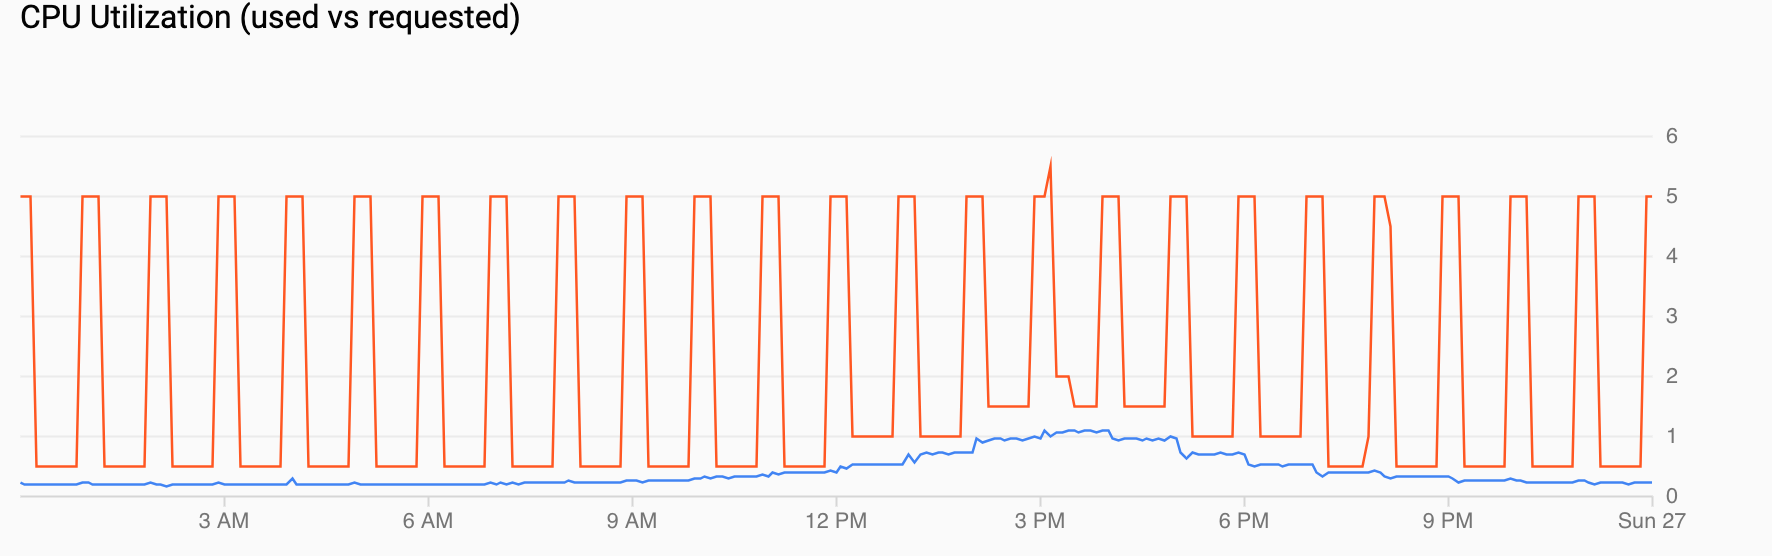 CPU 利用率图表，显示了一天内在下午 4 点前需求不断增长，然后下降。